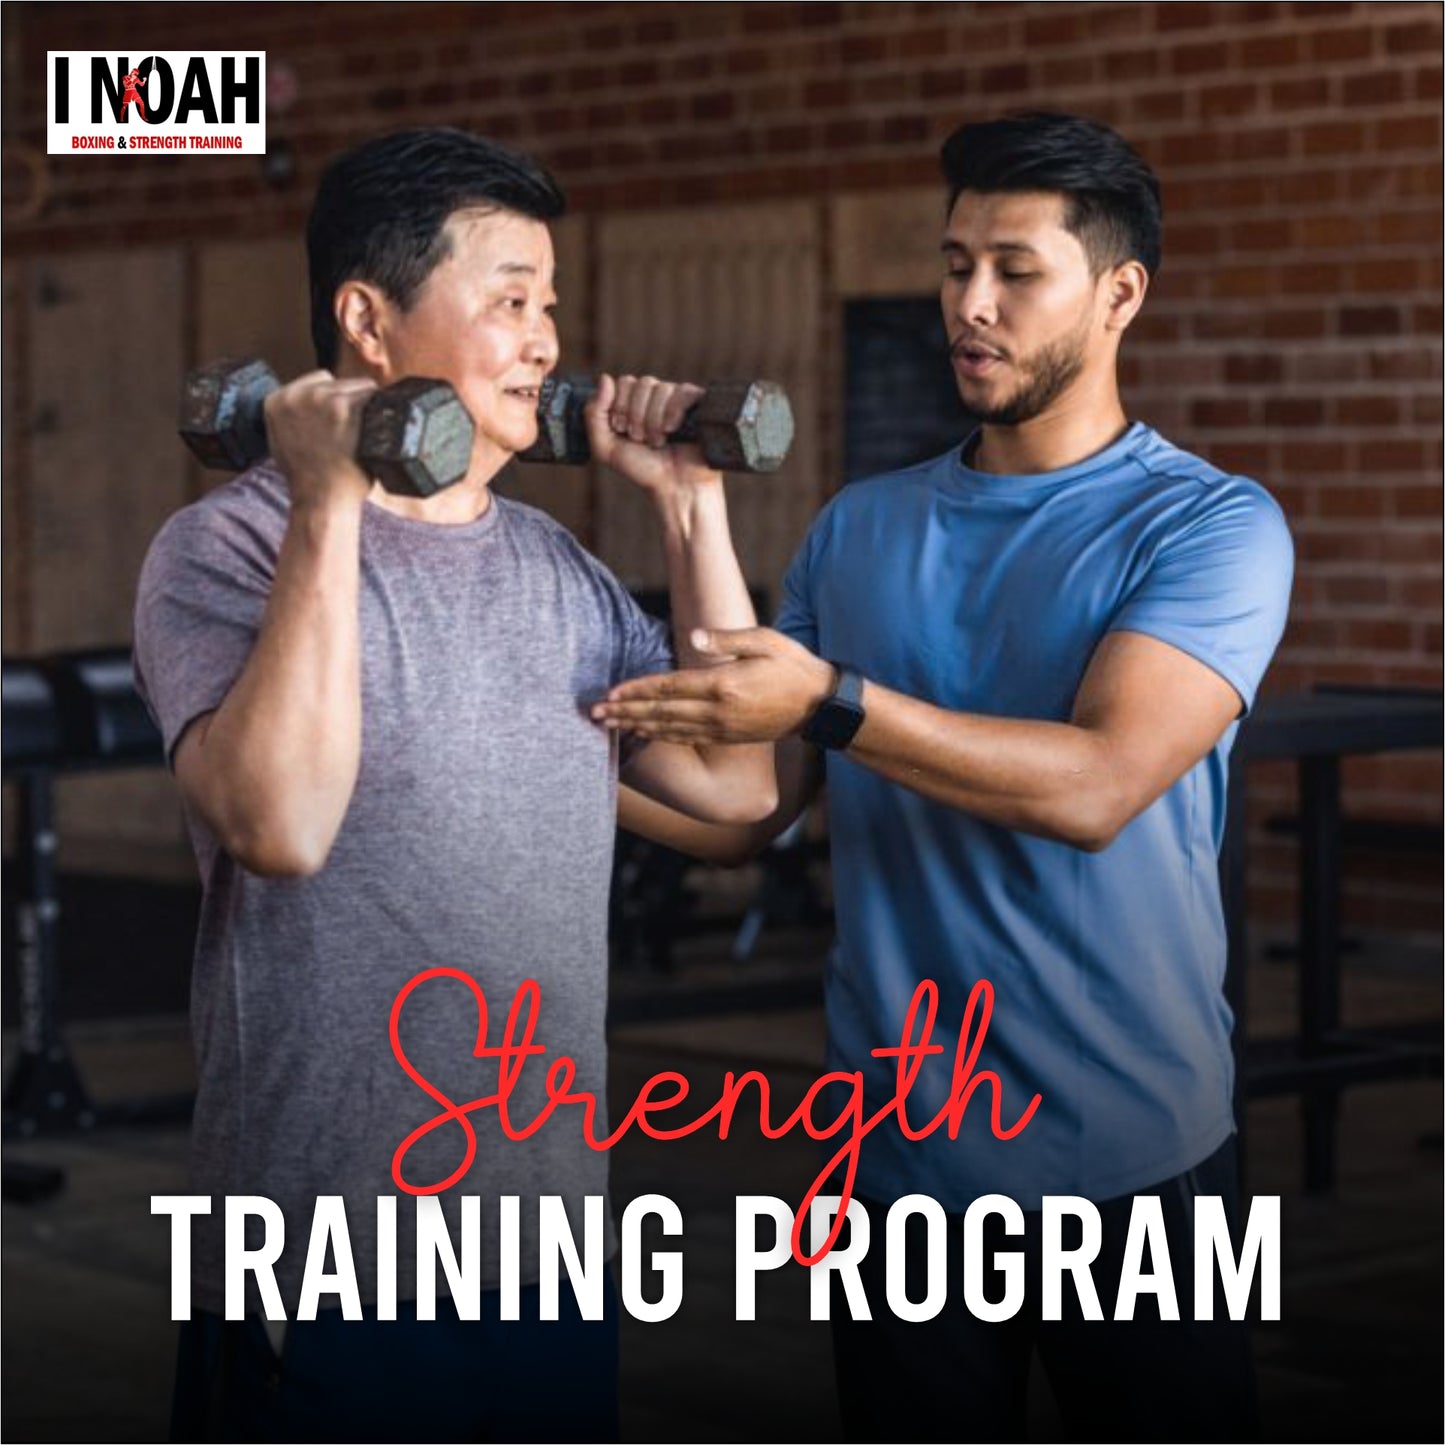 Bulking / Strength Training Program